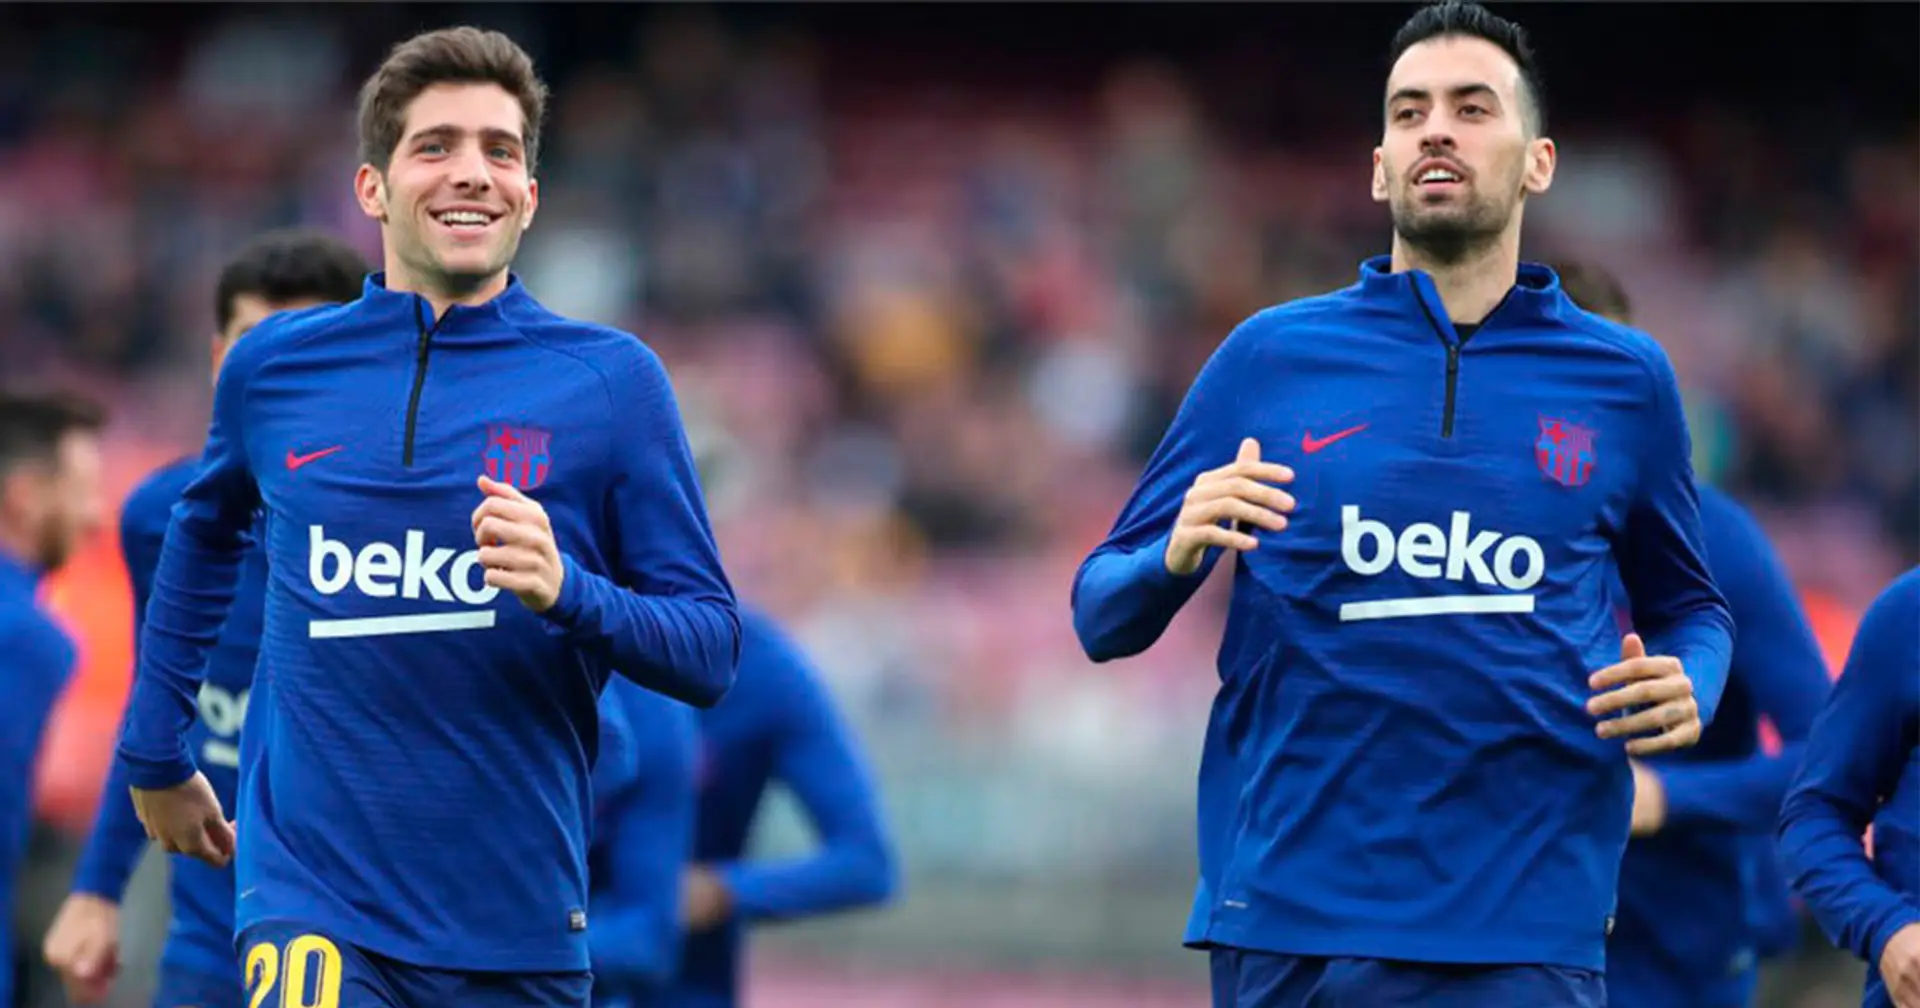 Êtes-vous d'accord avec le plan du Barça de garder Busquets et Sergi Roberto?